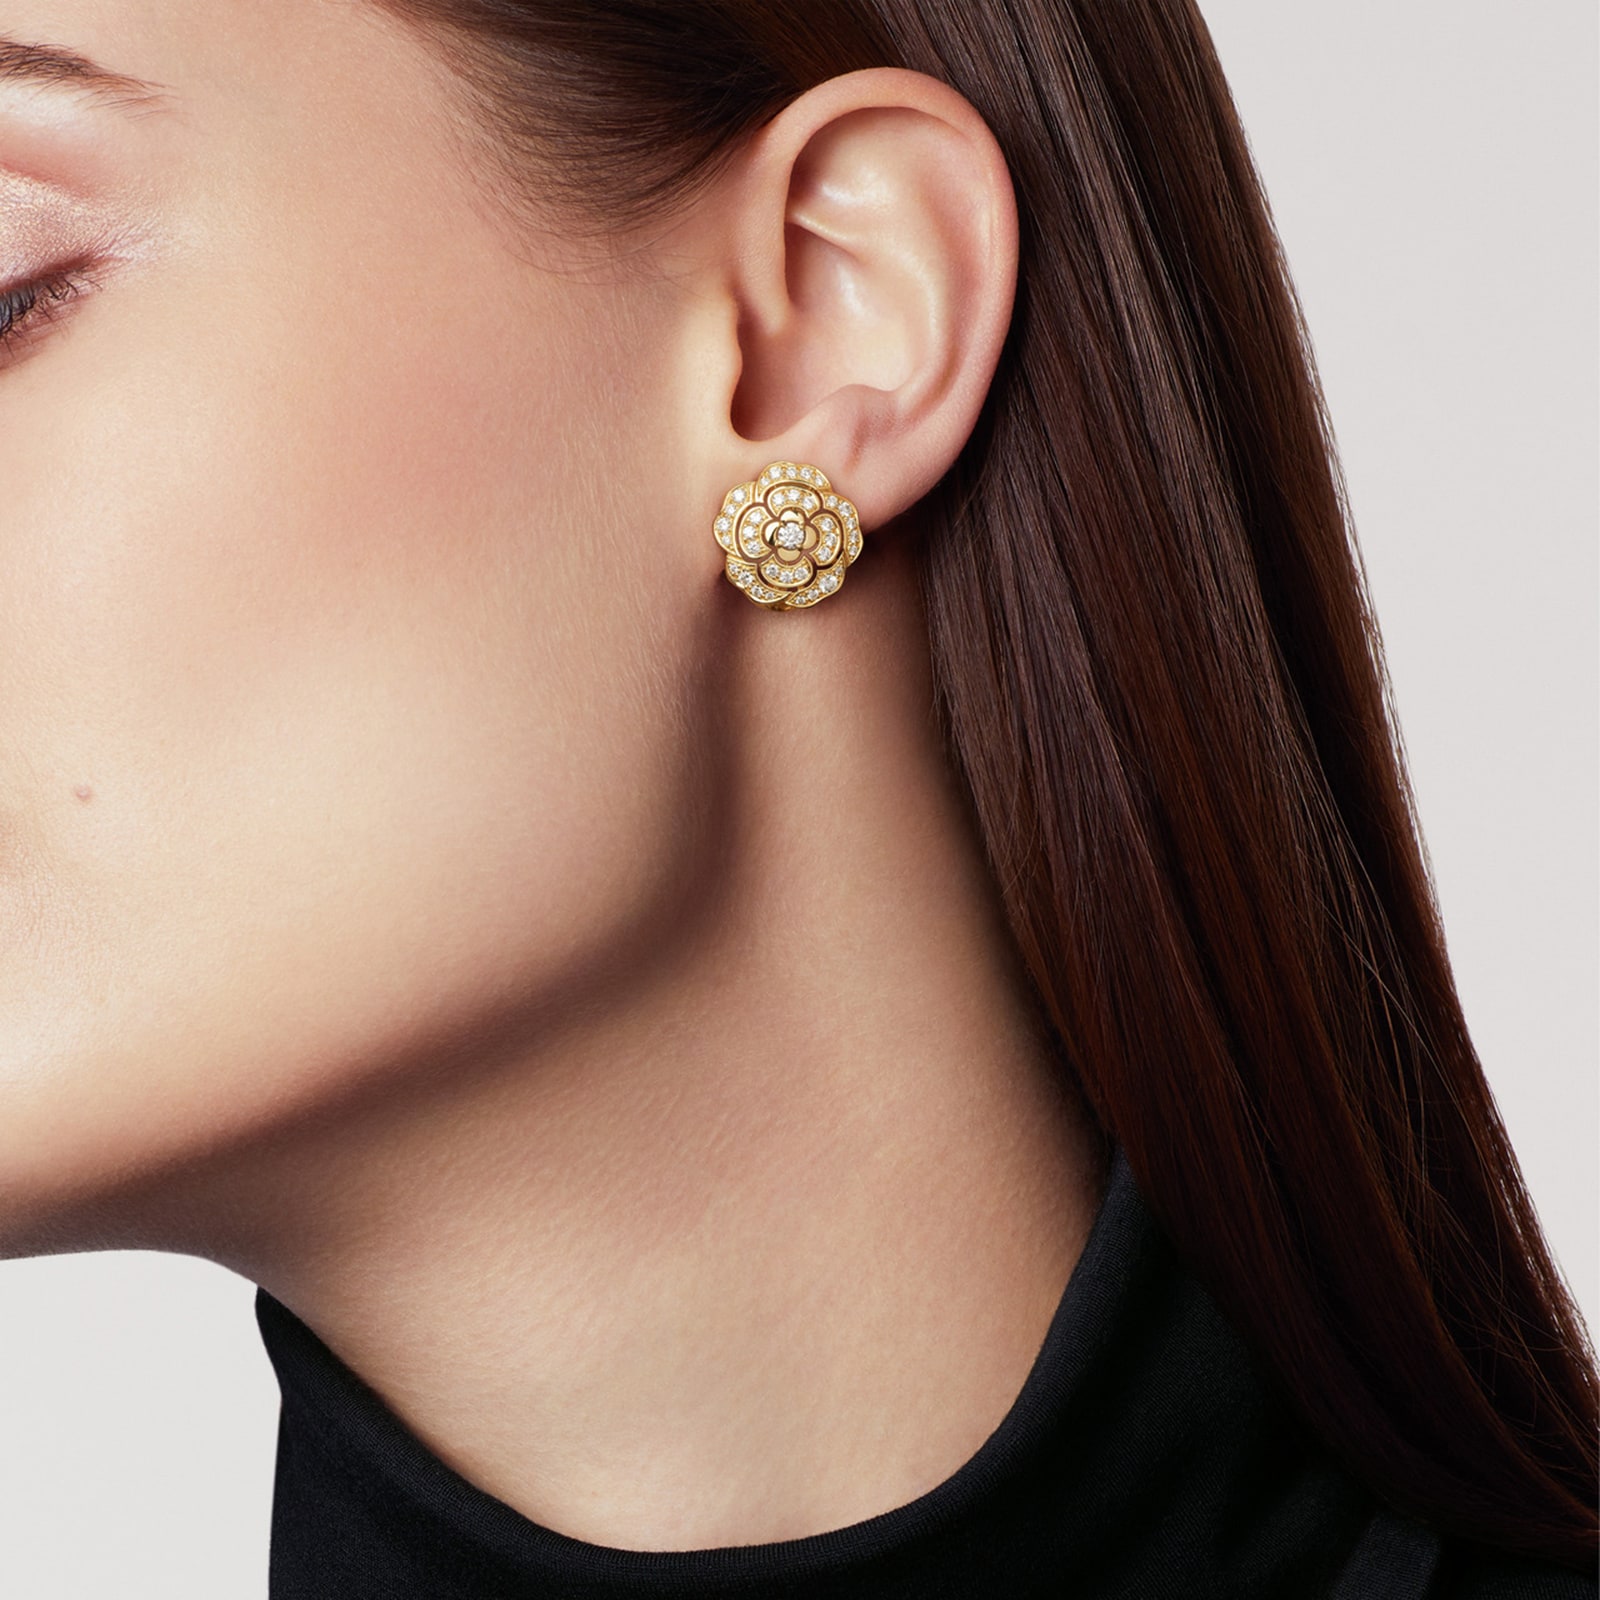 Chanel Fil de Camelia Earrings  Chanel jewelry earrings, White